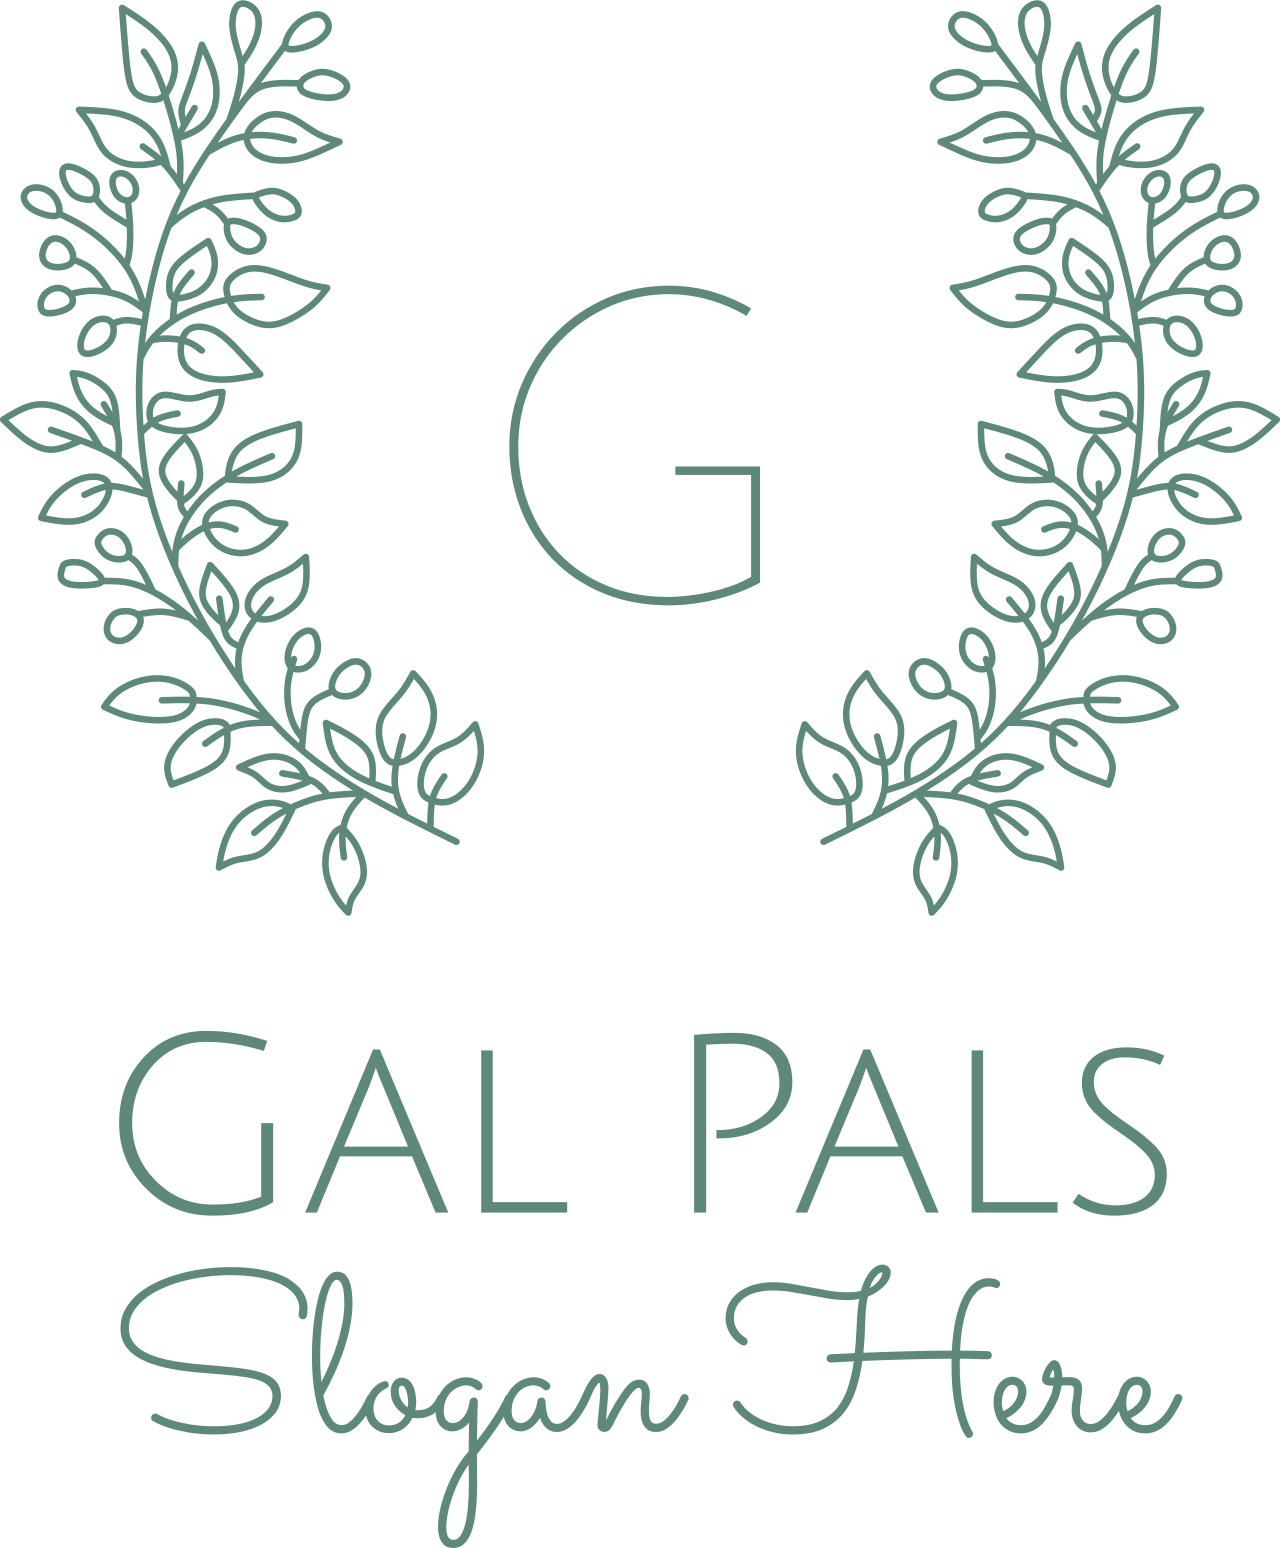 Gal Pals's logo